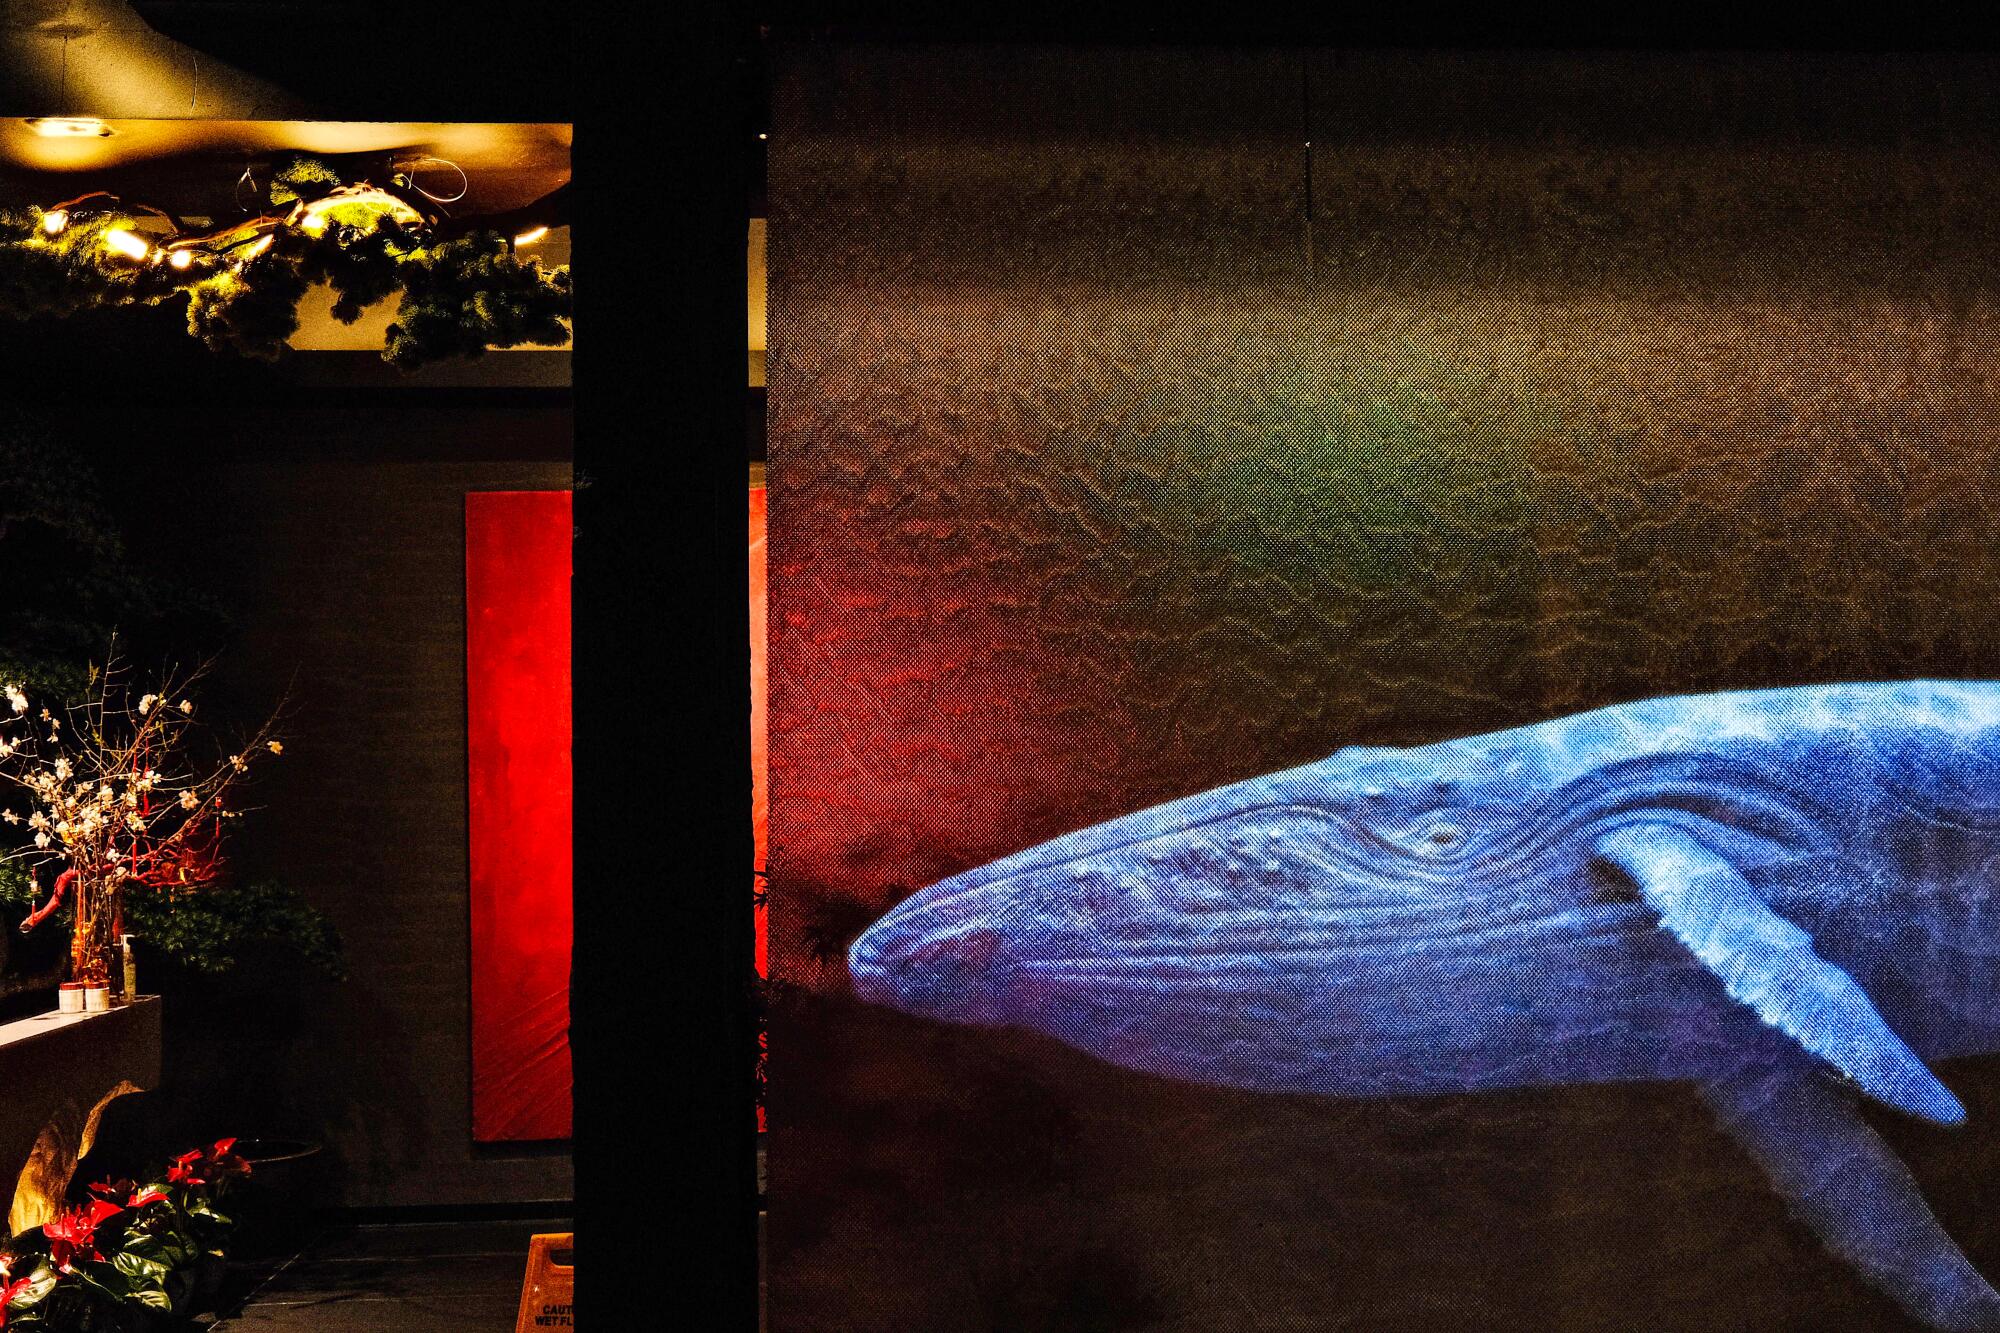 Ein vorbeischwimmender Wal, projiziert auf einen Vorhang im Eingangsbereich des Restaurants.